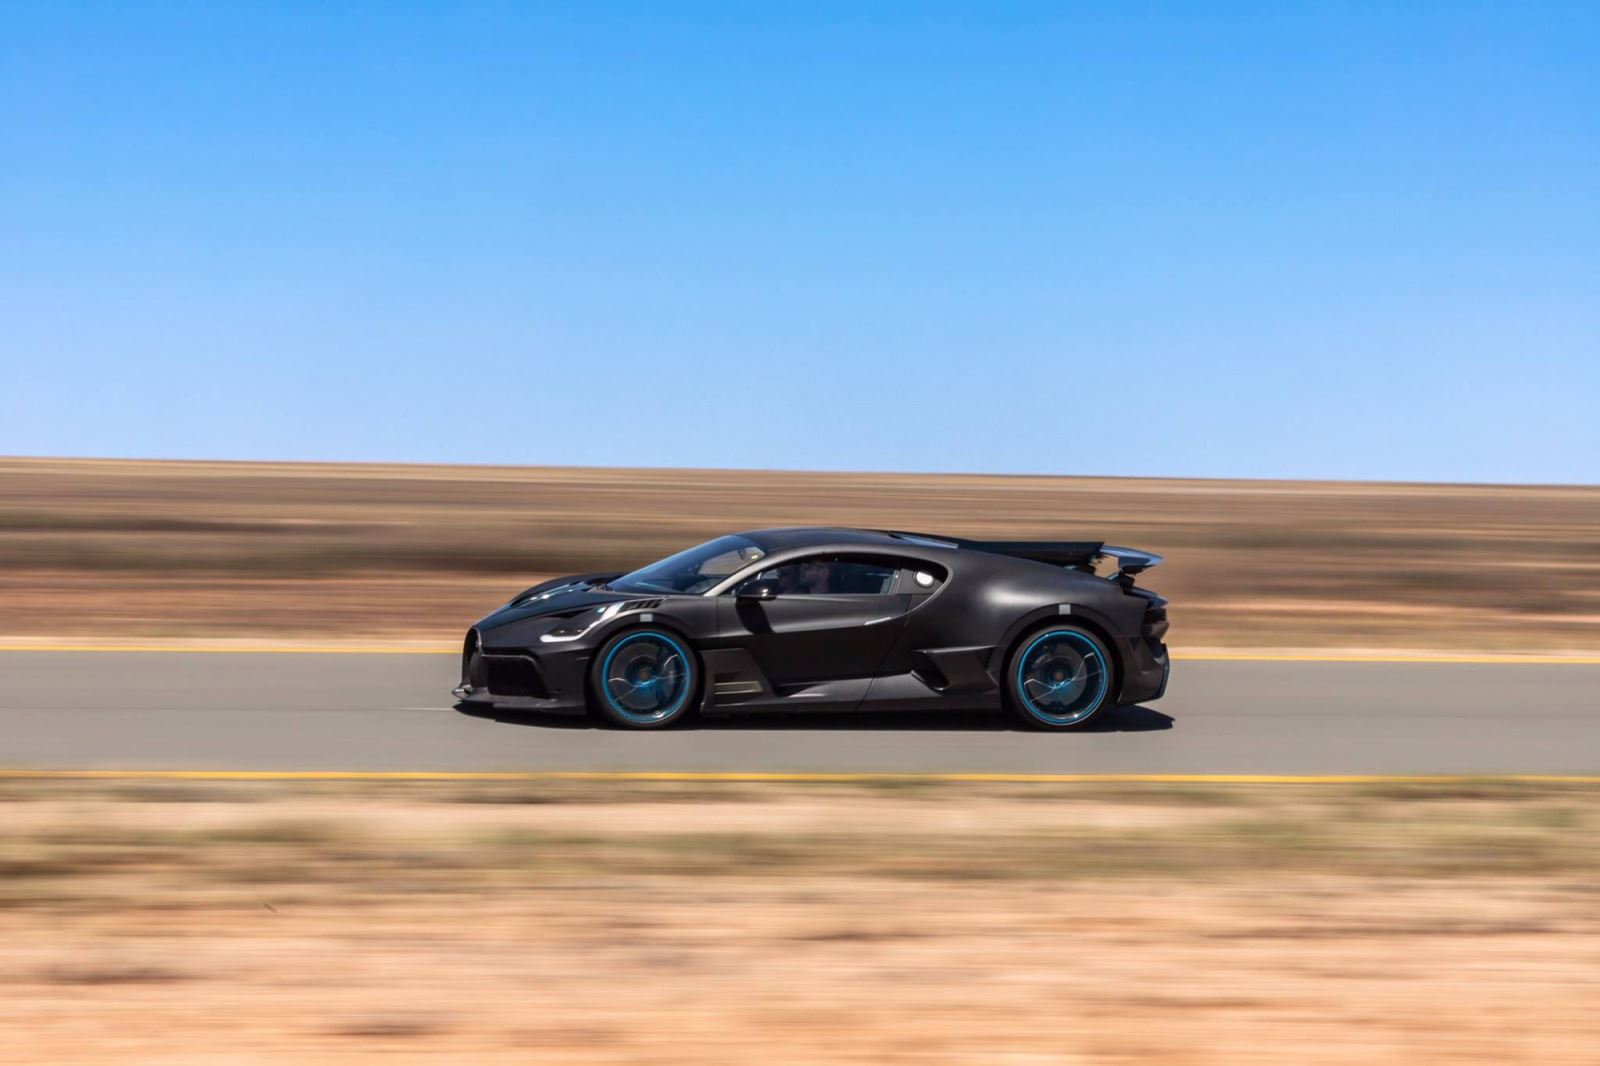 Thử siêu xe đình đám Bugatti Divo chạy 250 km/h trong cái nóng 40 độ liên tục không ngừng nghỉ2